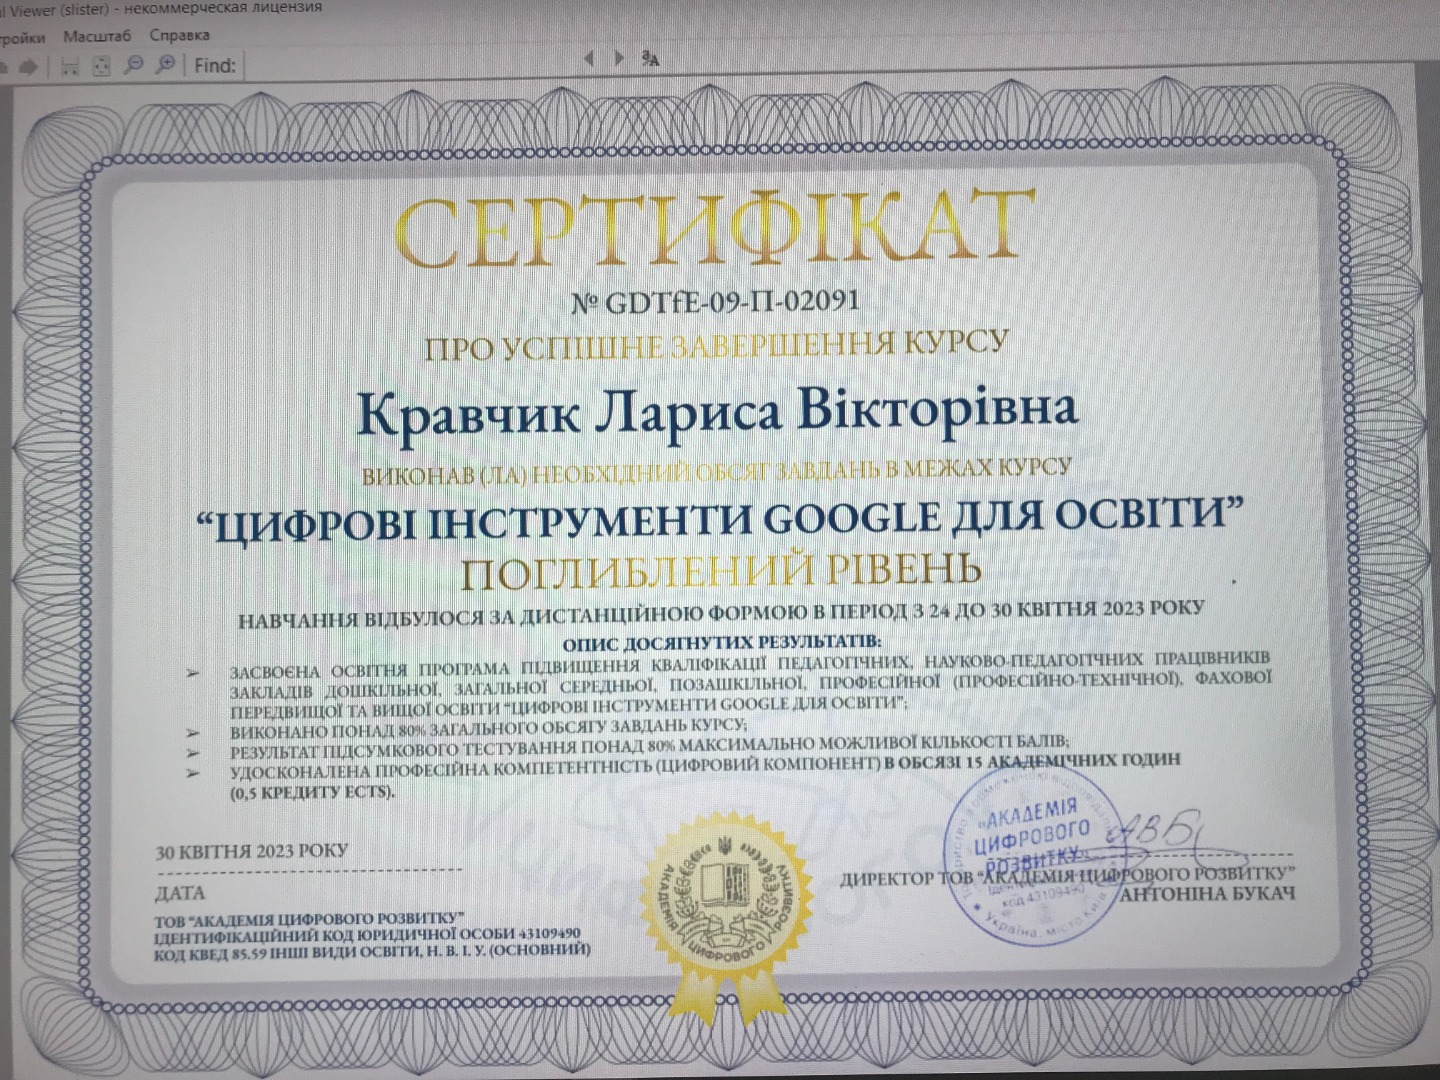 Цифрові інструменти Google для освіти (поглиблений рівень)